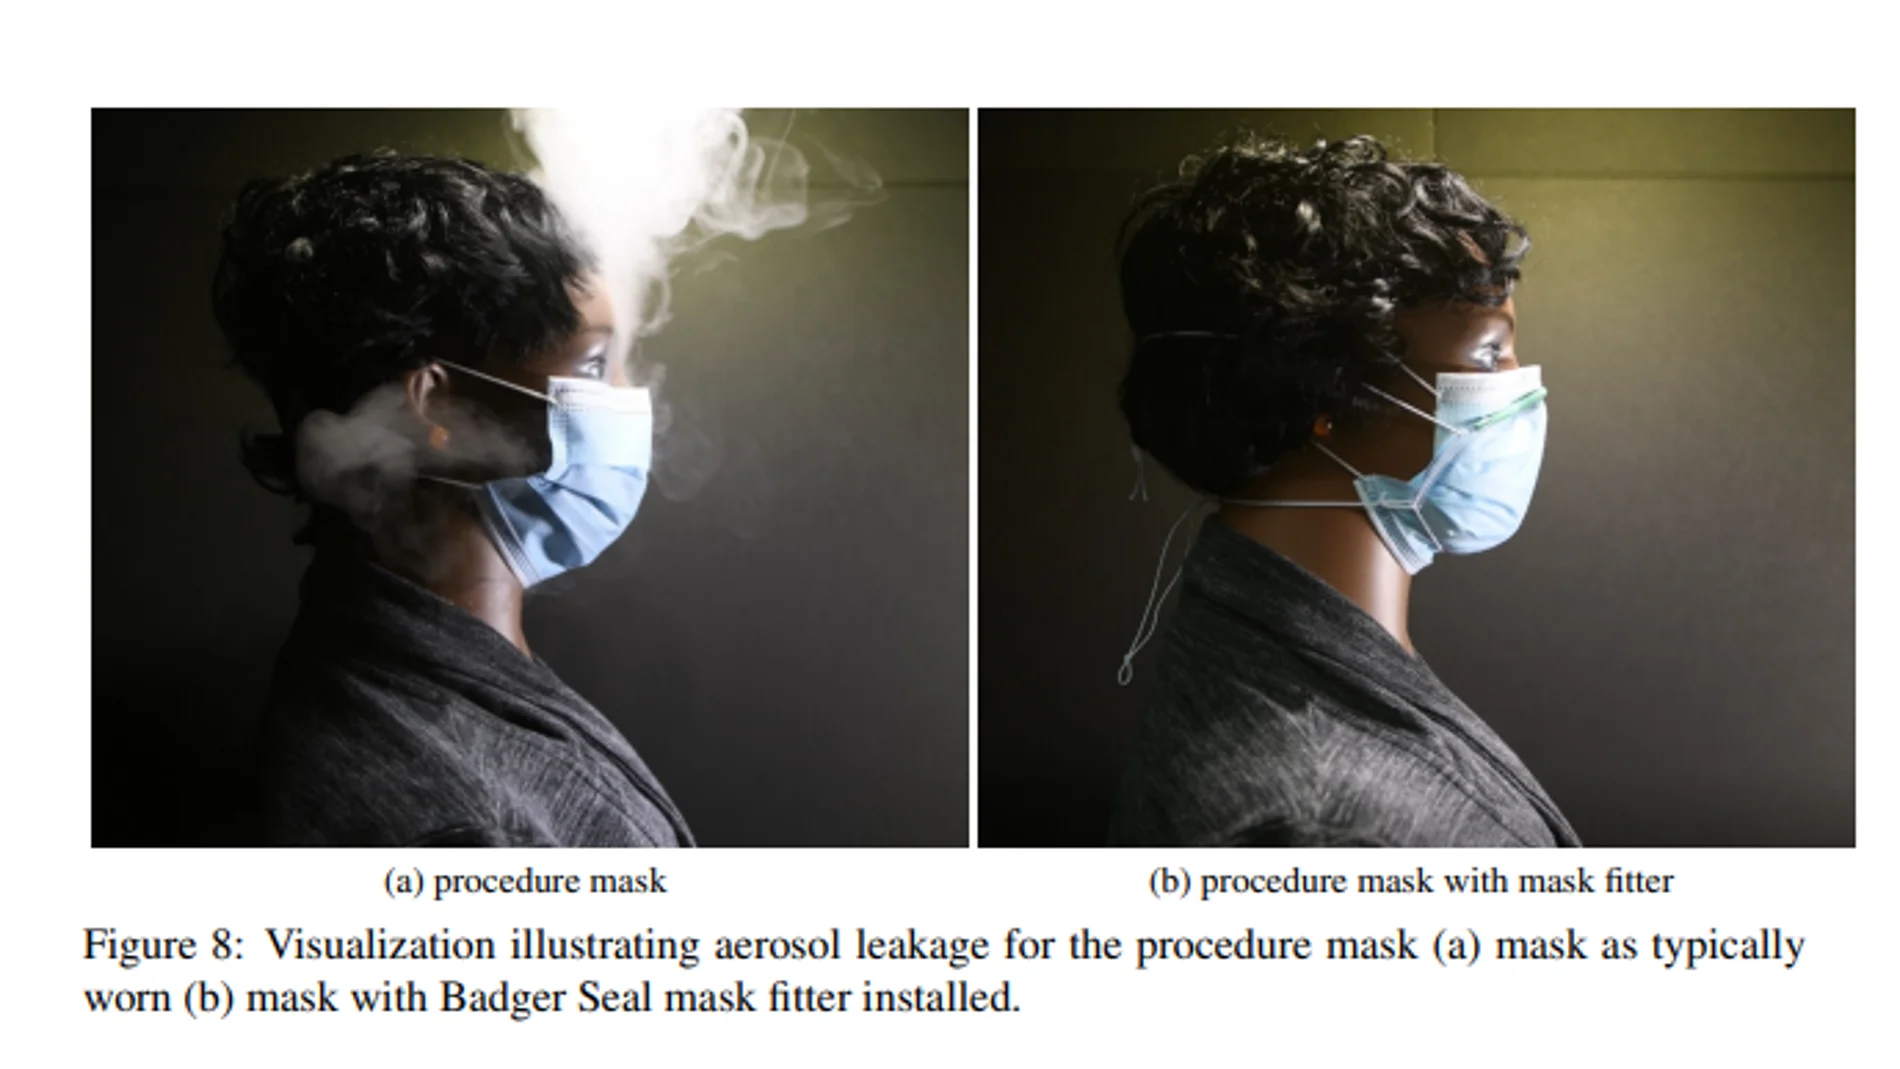 Los efectos de un ajustador en una mascarilla quirúrgica